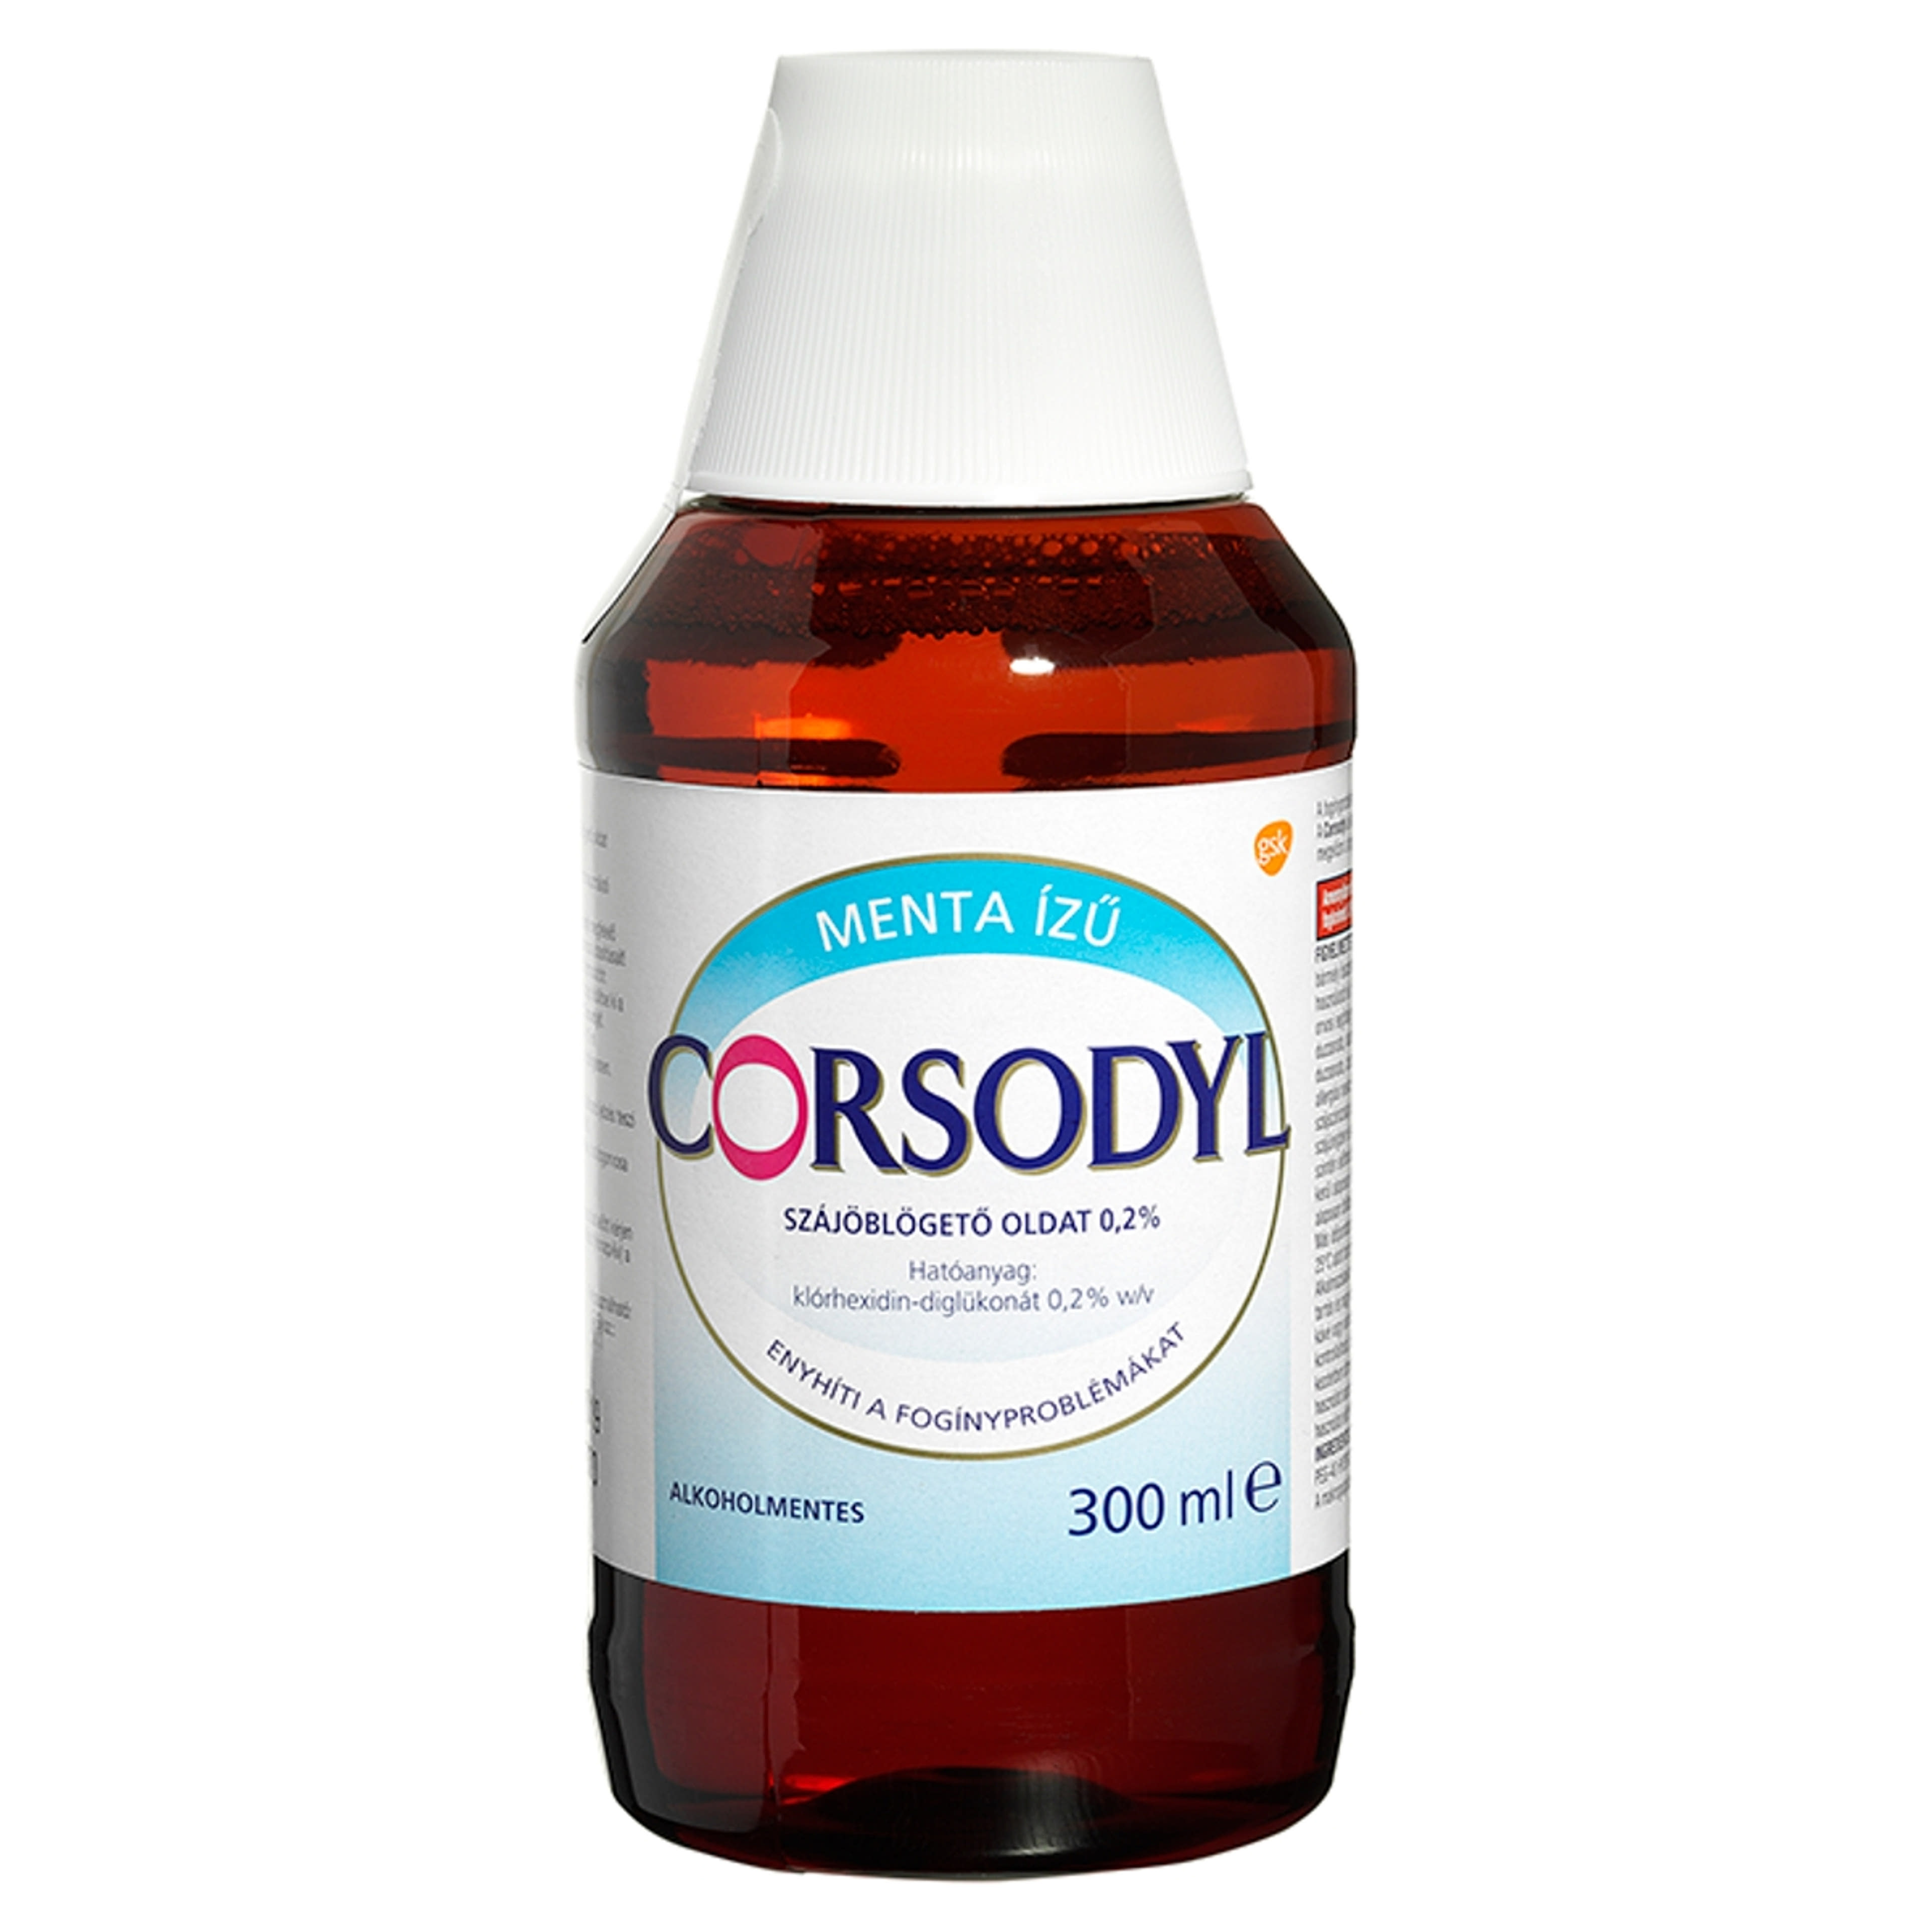 Corsodyl Alkoholmentes szájöblögető oldat - 300 ml